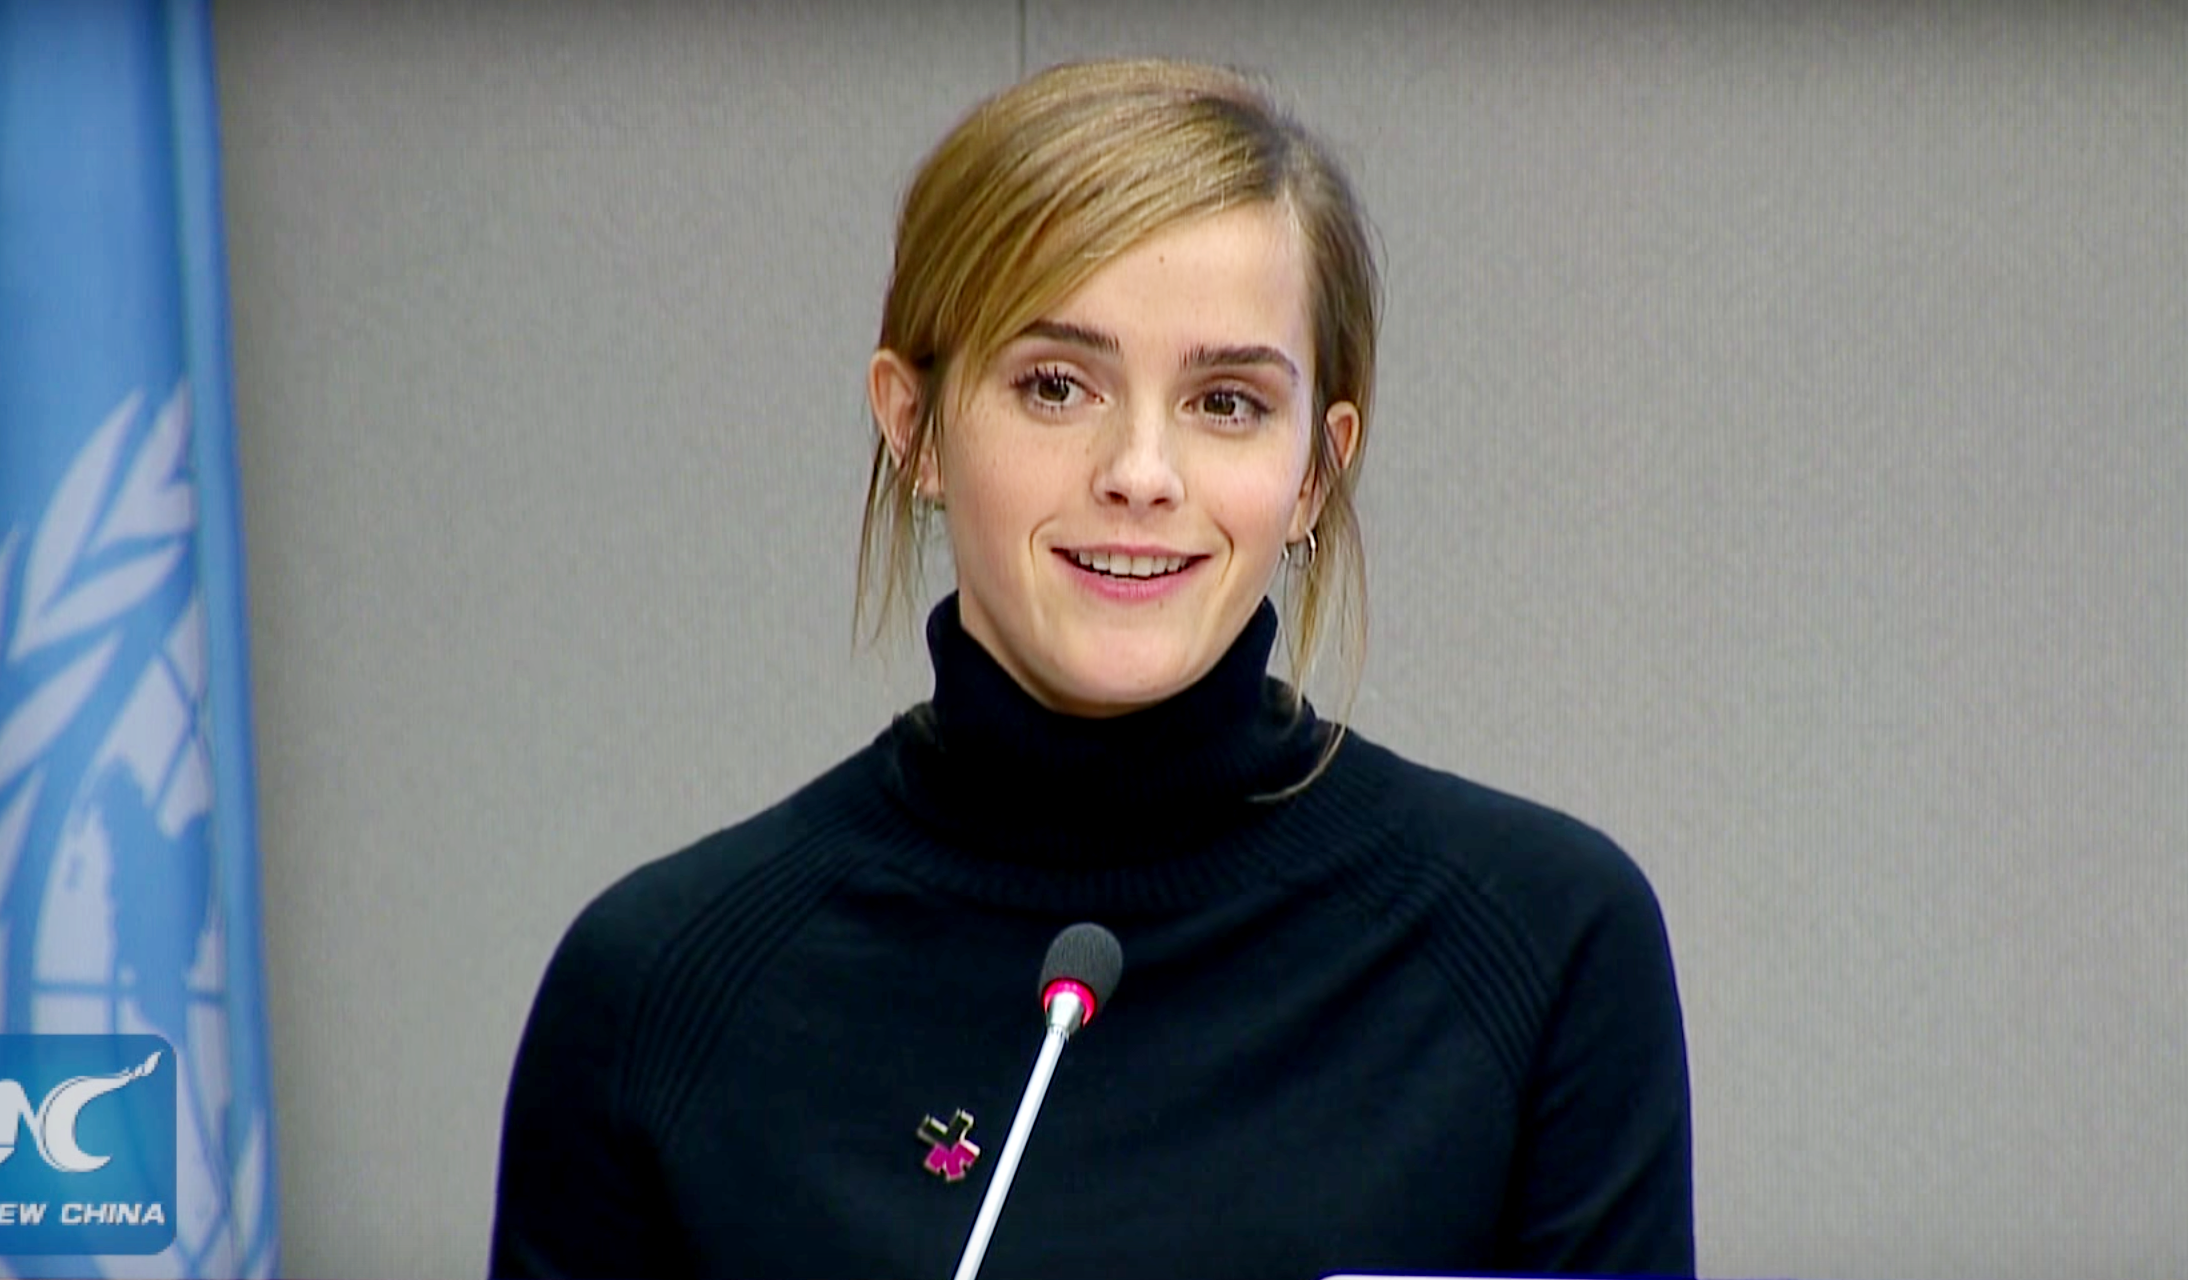 Emma Watson 2016 Un Speech